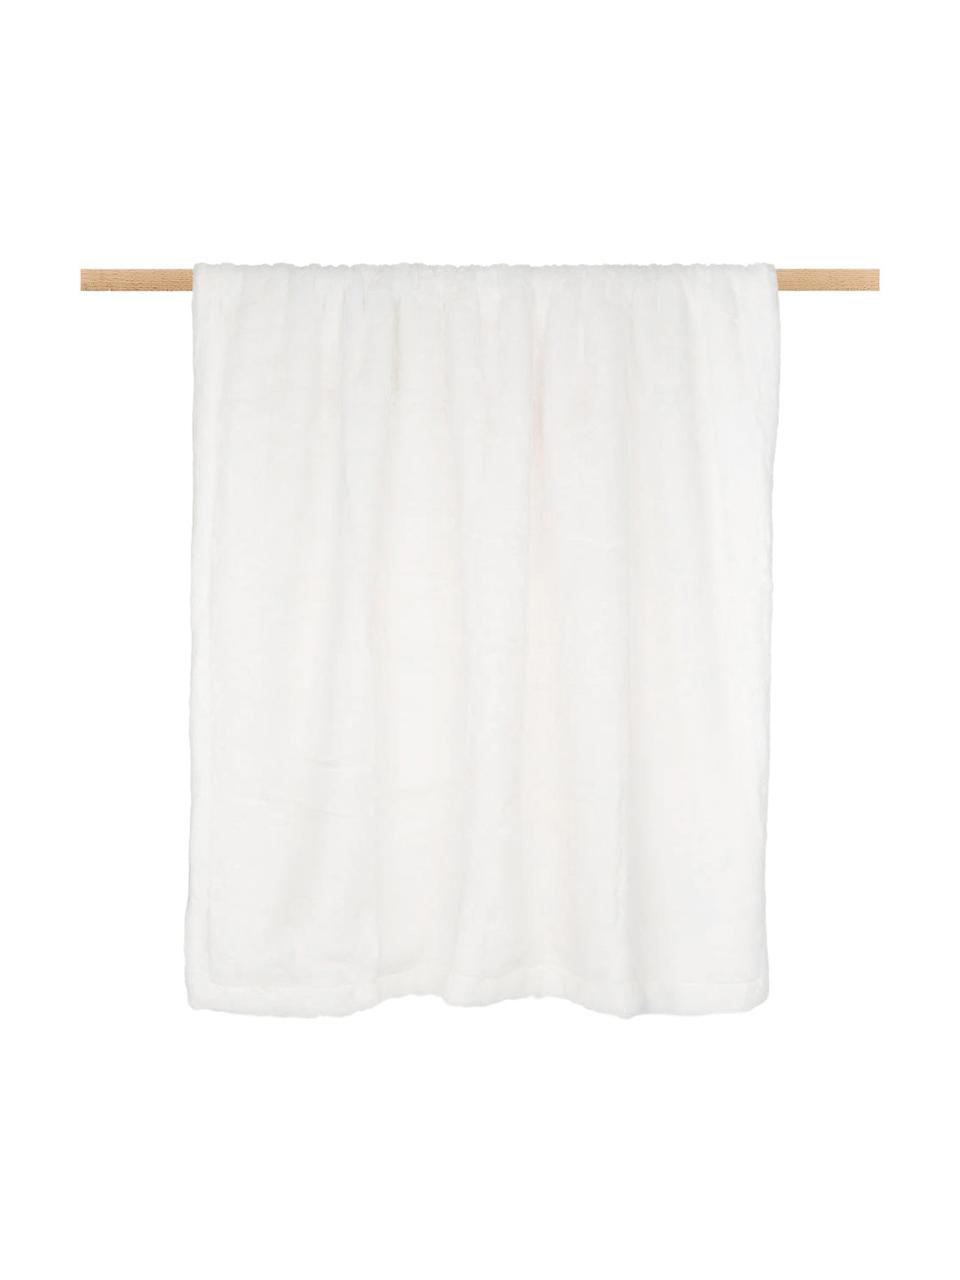 Kuscheldecke Mette aus Kunstfell in Weiß, Vorderseite: 100% Polyester, Rückseite: 100% Polyester, Weiß, 150 x 200 cm